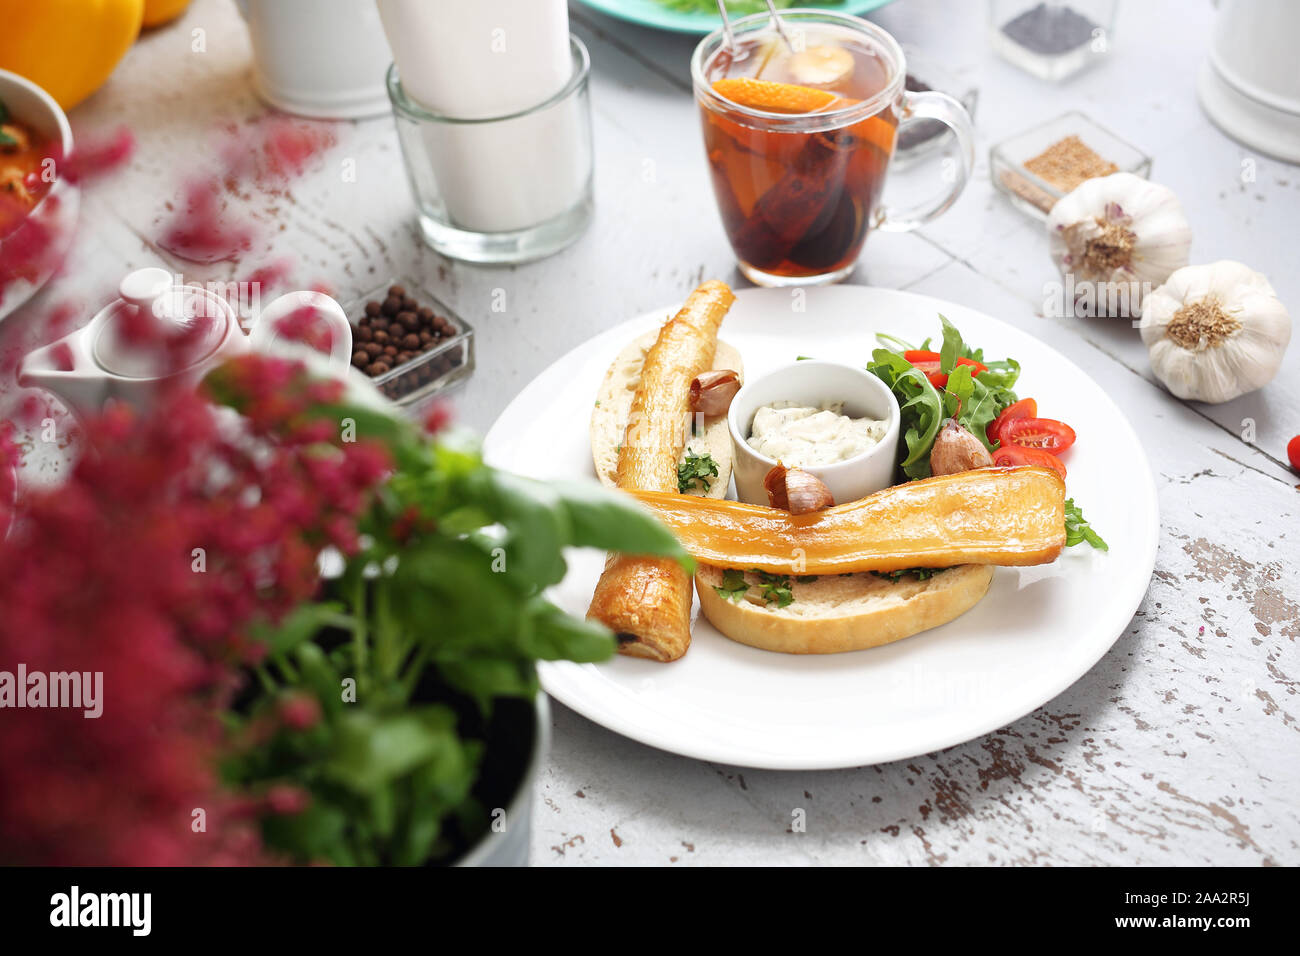 Petersilienwurzel gebacken in Honig Soße auf Toast. Rucola und Tomaten Salat, Knoblauch Sauce. Stockfoto